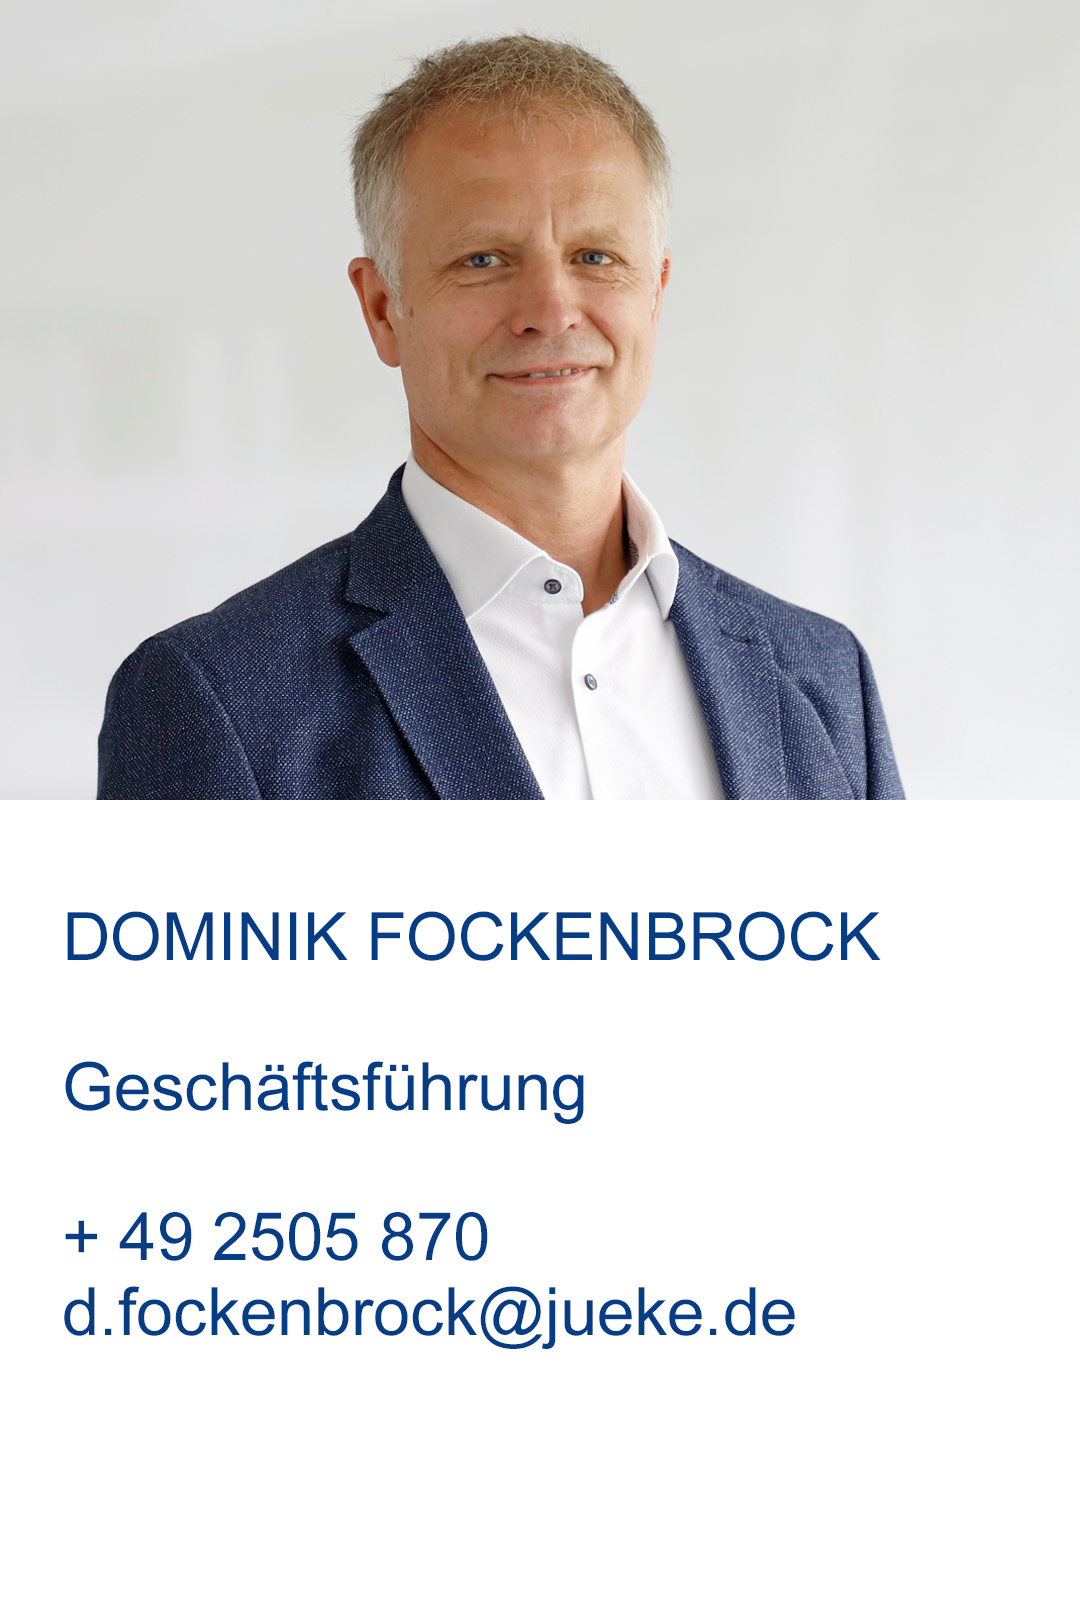 Dominik Fockenbrock